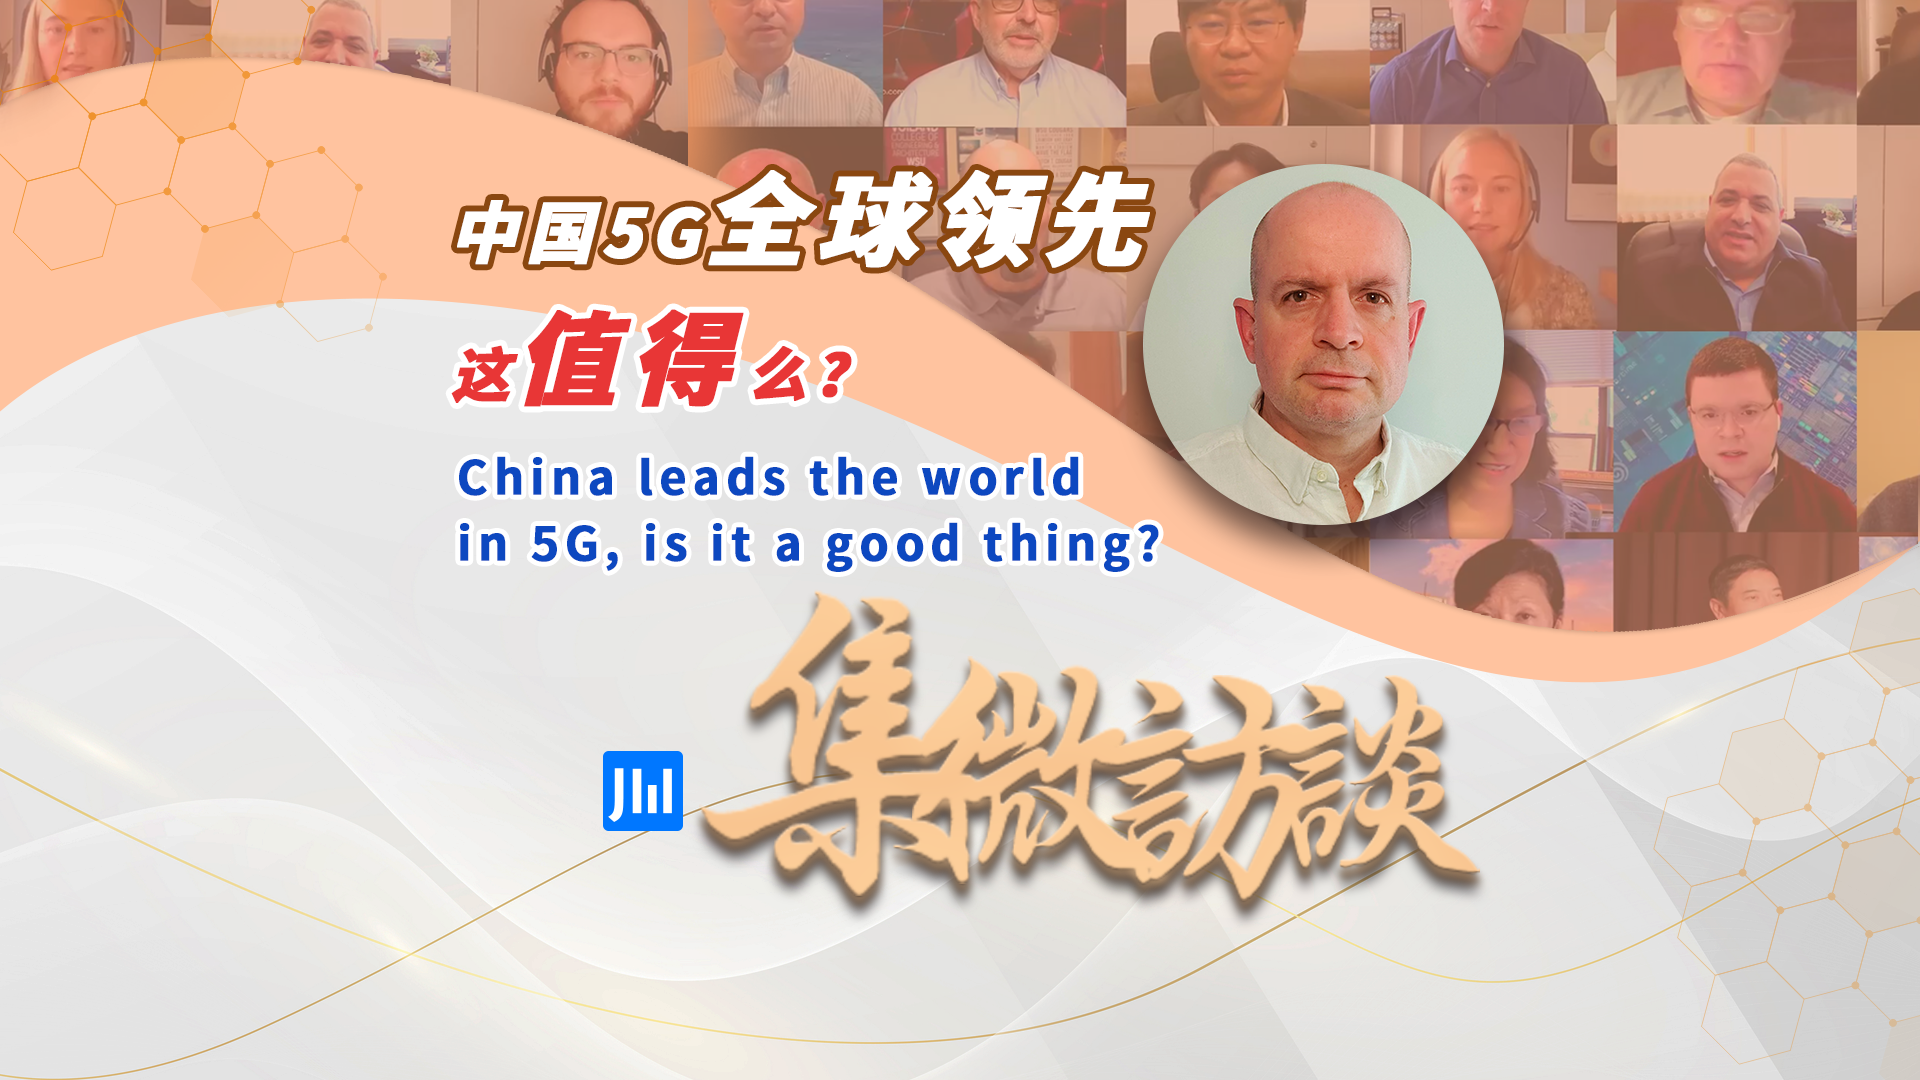 集微访谈第 279 期：中国 5G 全球领先，这值得么？